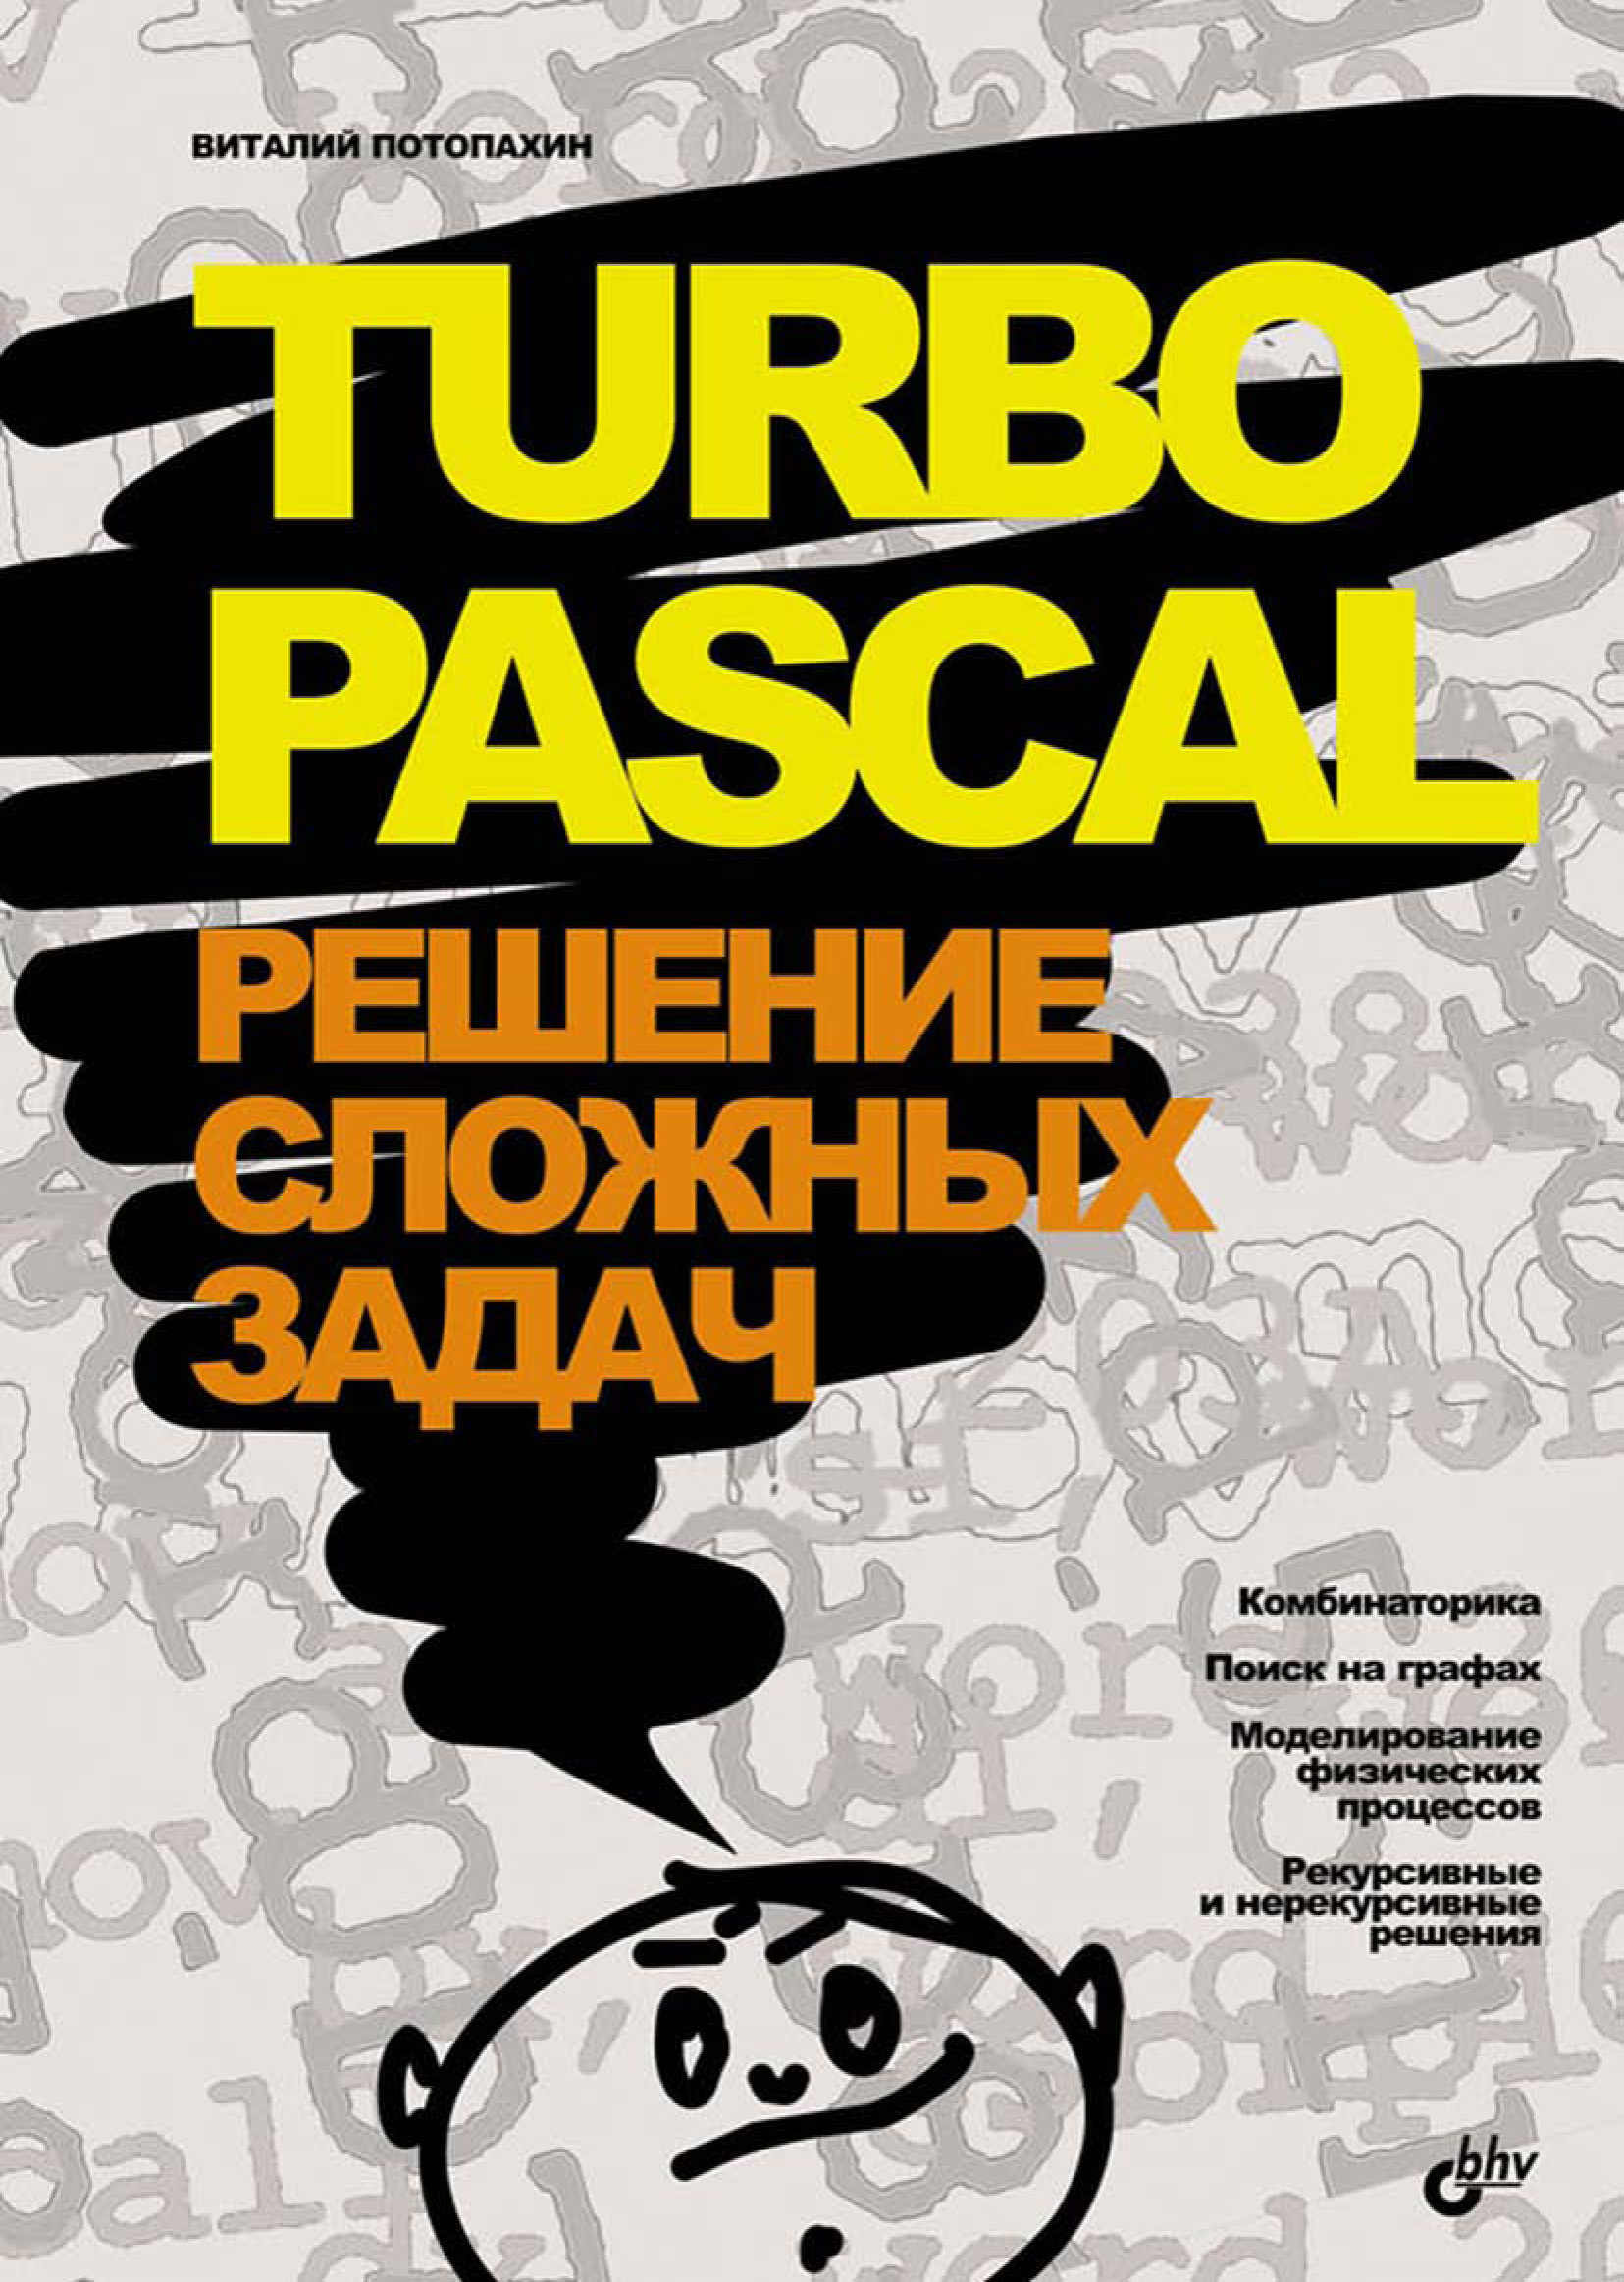 Книга  Turbo Pascal. Решение сложных задач созданная В. В. Потопахин может относится к жанру программирование. Стоимость электронной книги Turbo Pascal. Решение сложных задач с идентификатором 6654121 составляет 75.00 руб.